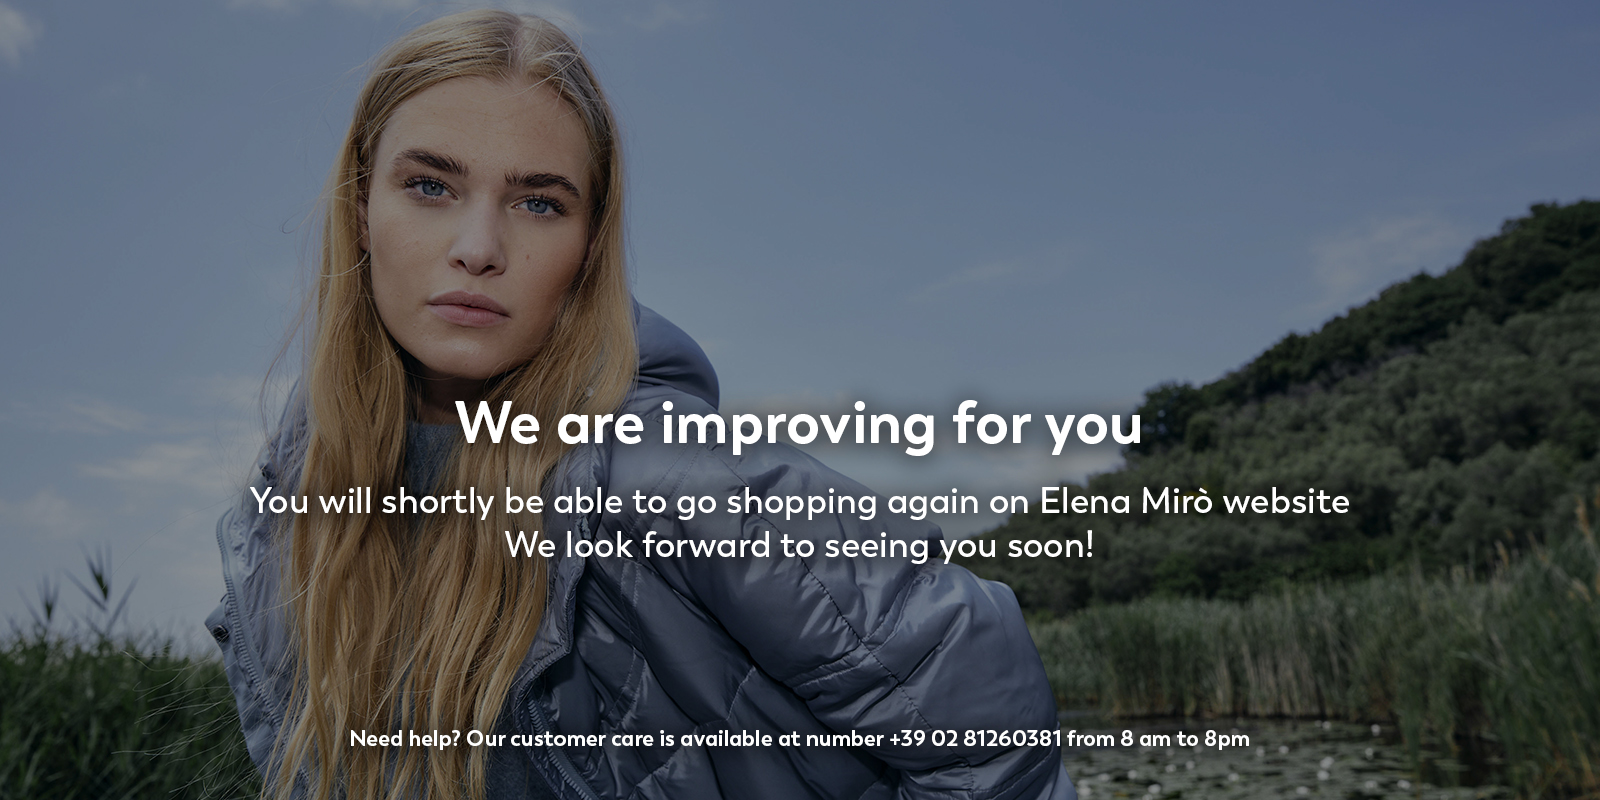 Le site d’Elena Mirò est momentanément indisponible pour cause de maintenance.